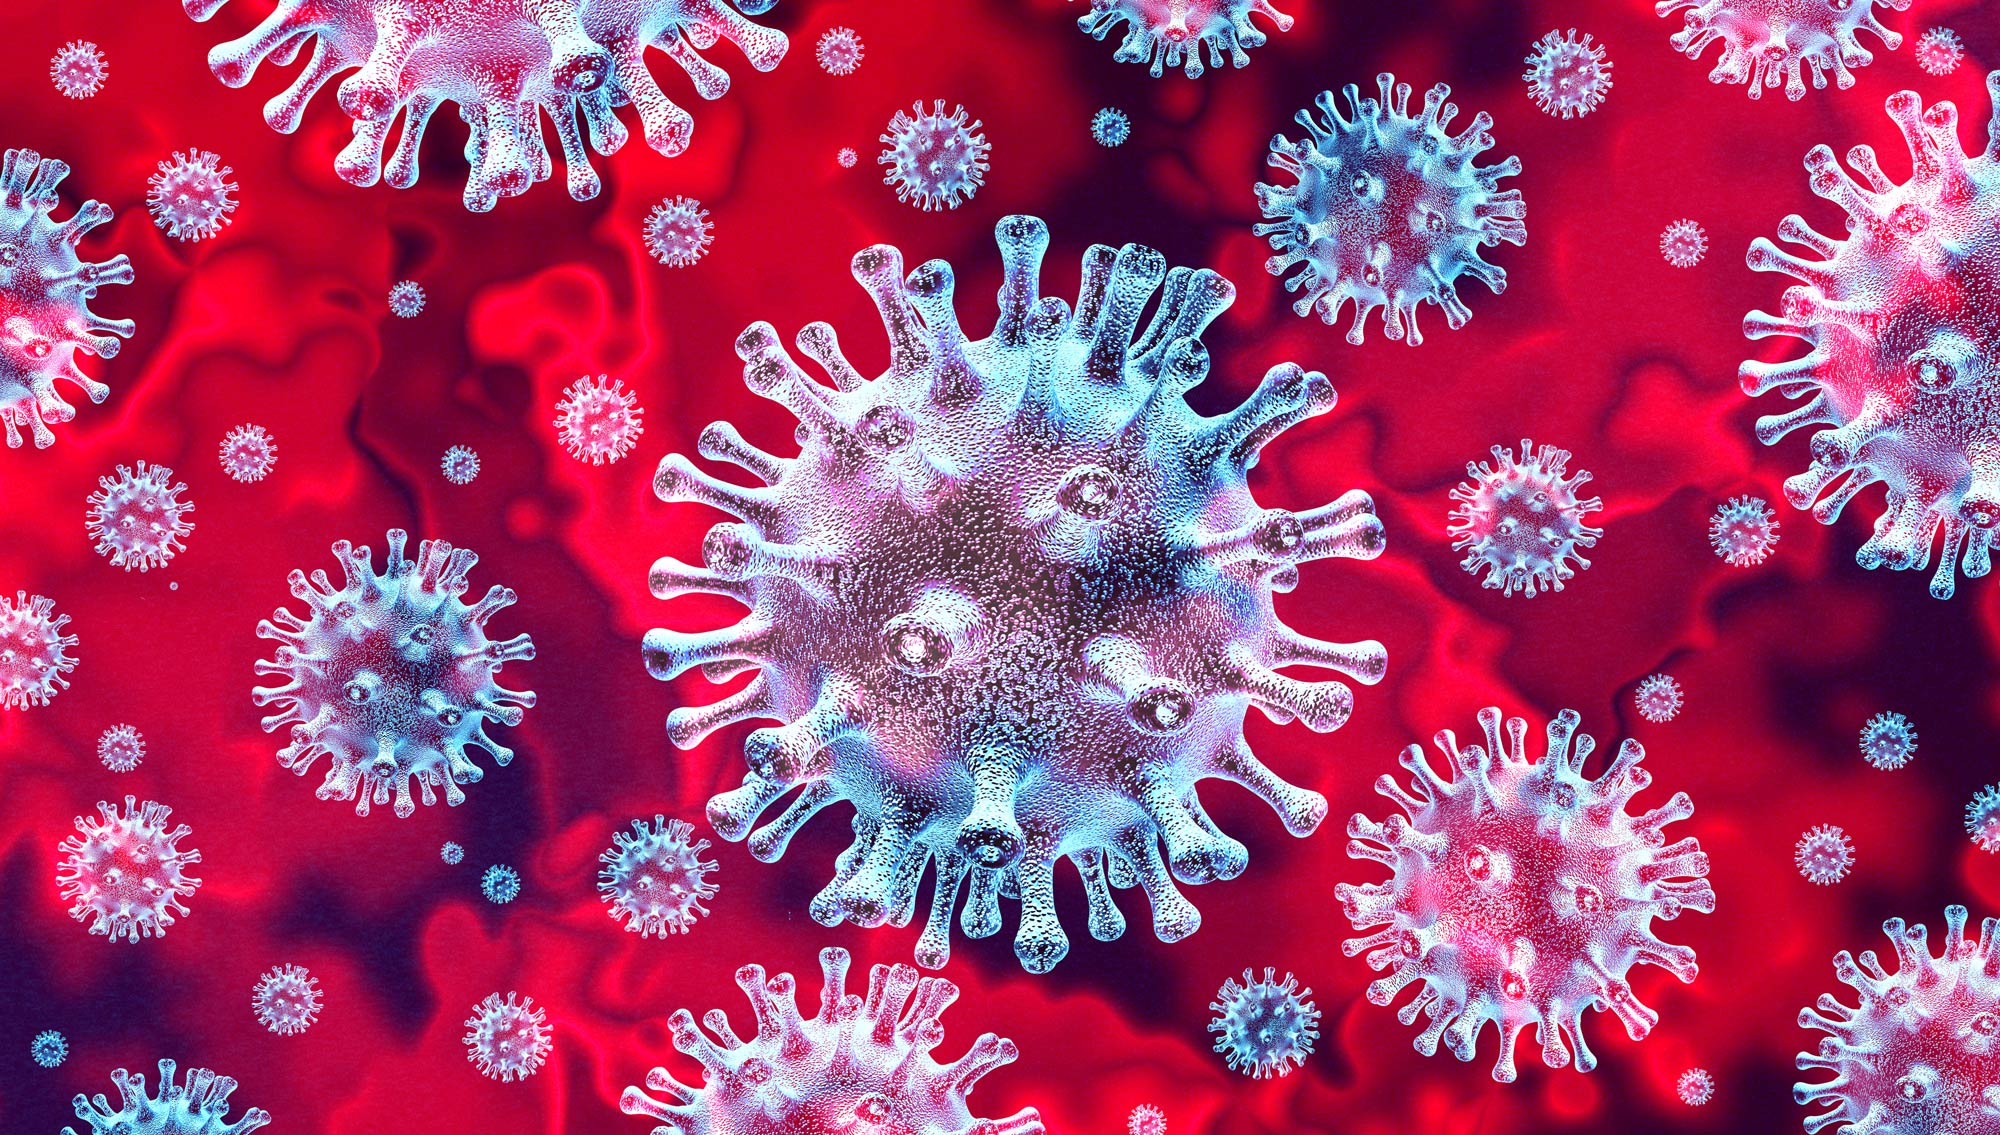 NOVA and the Coronavirus Pandemic